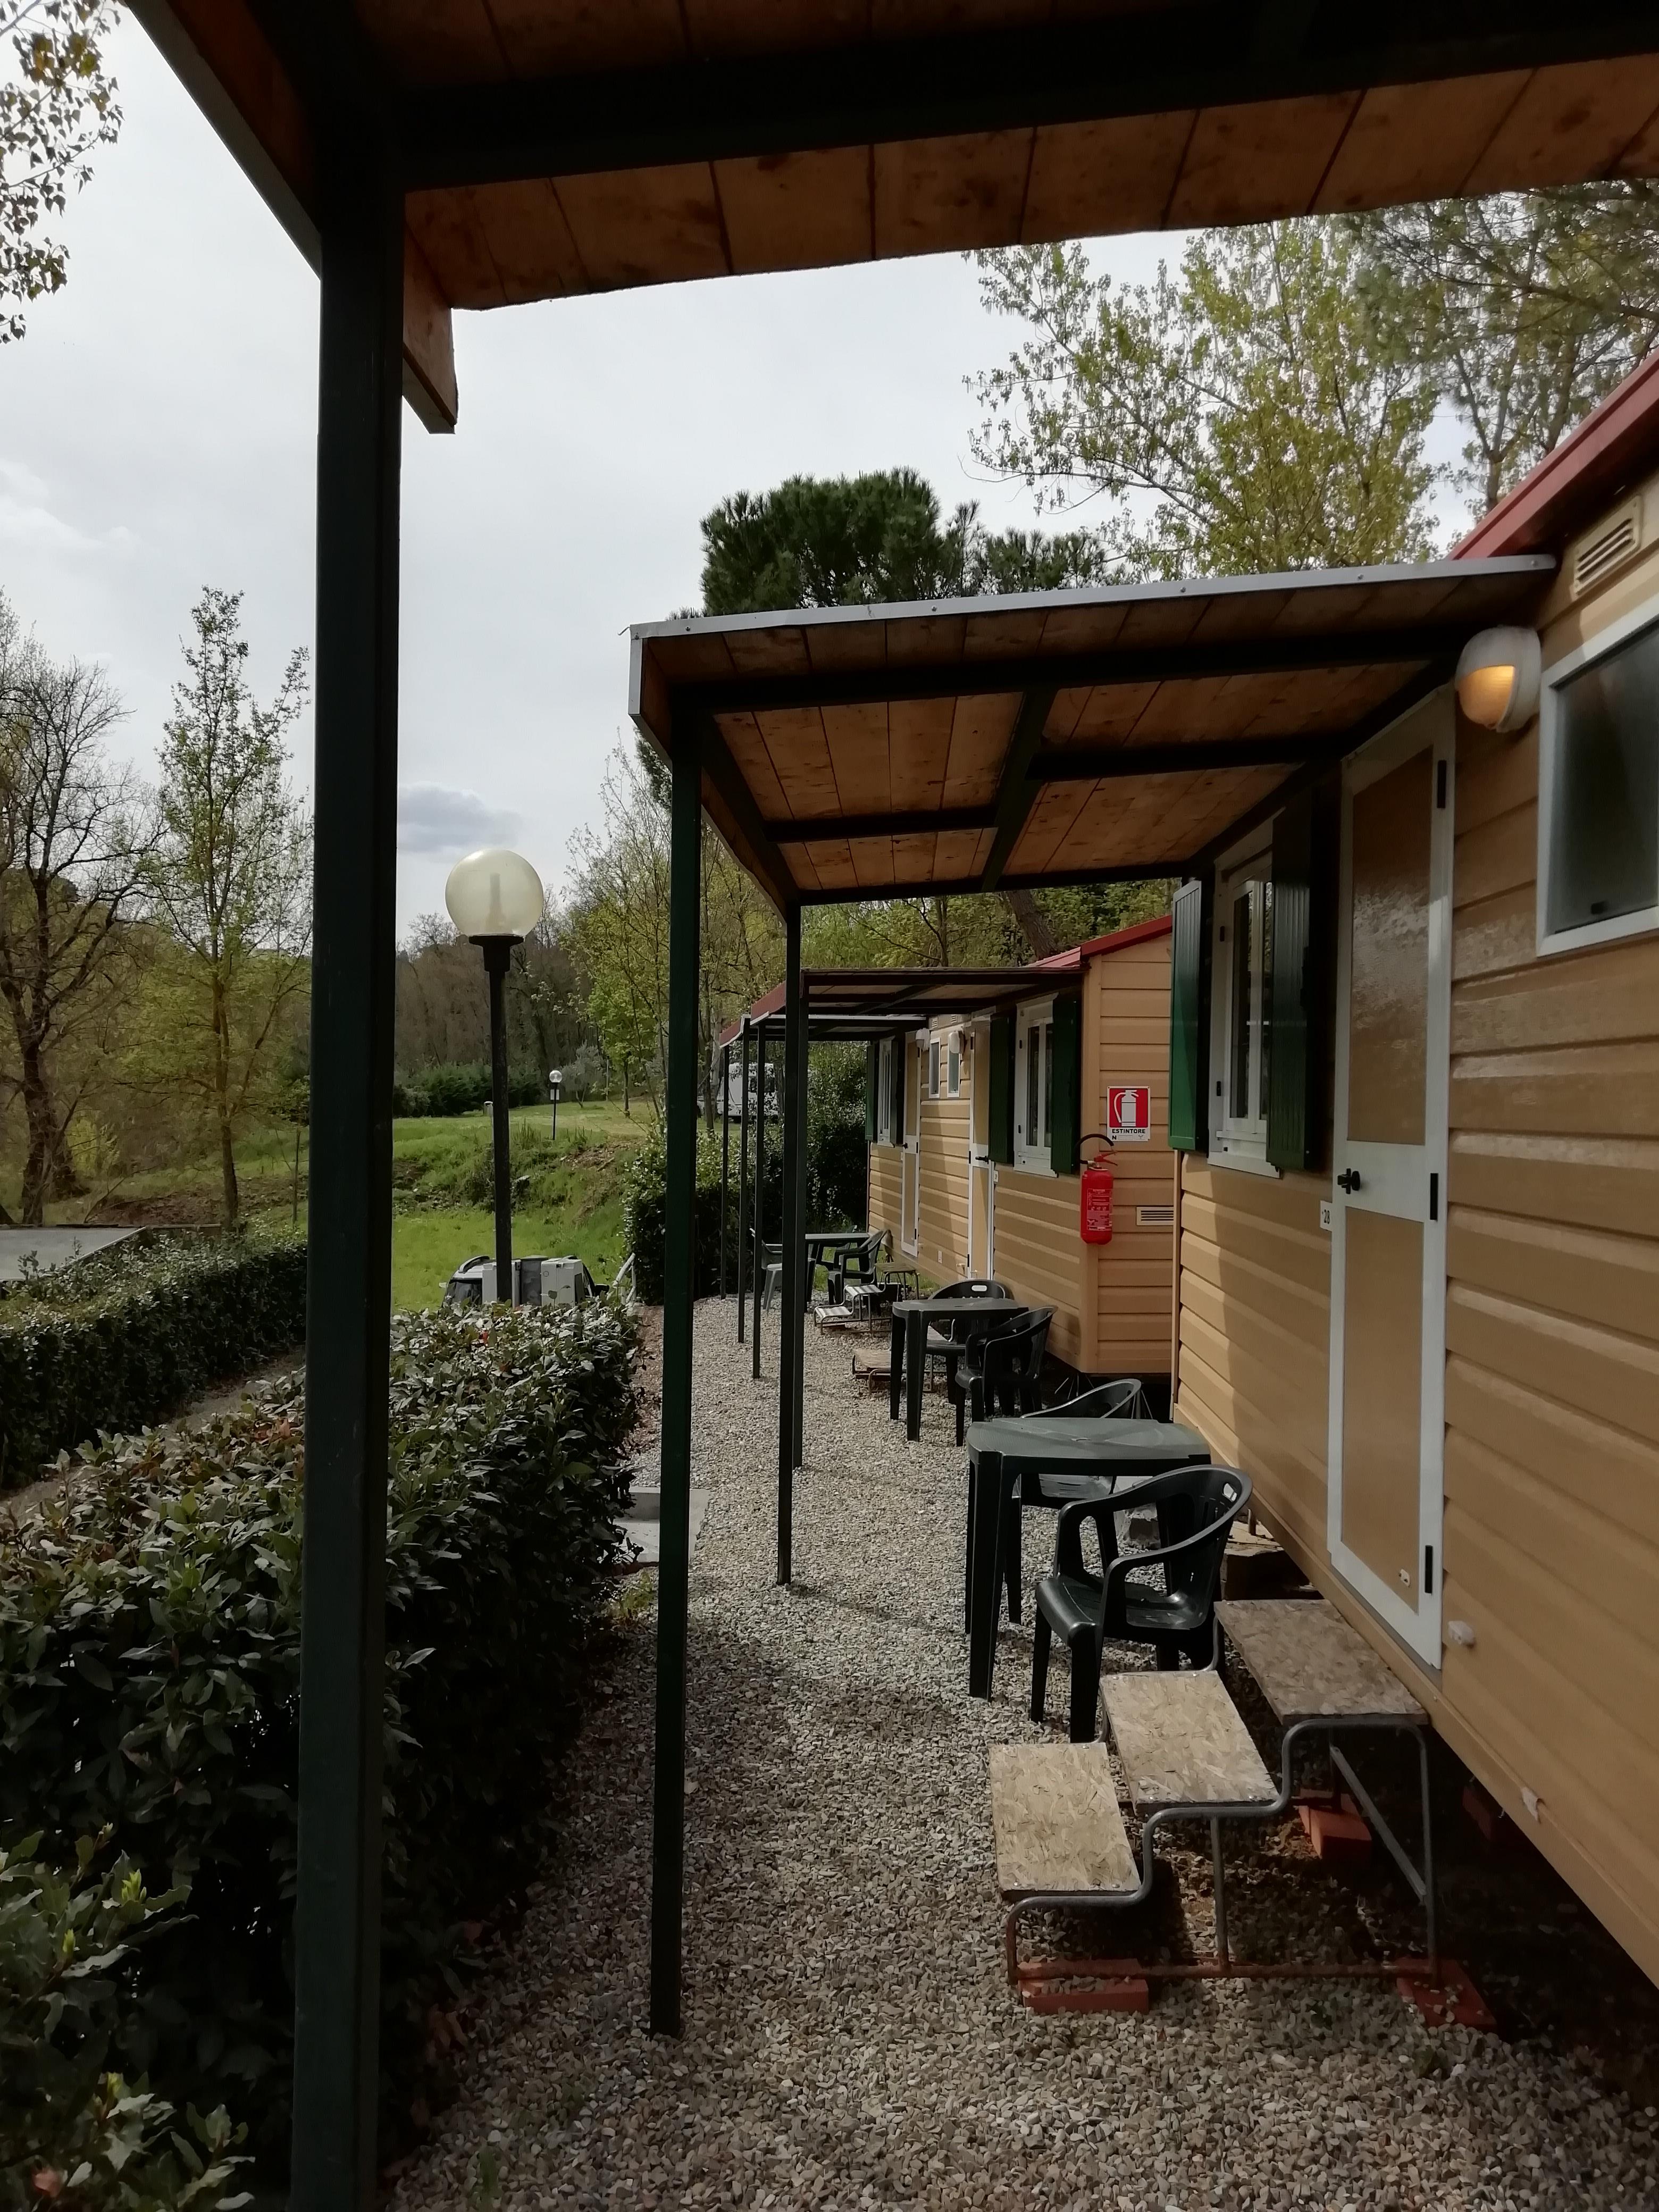 Huuraccommodatie - Stacaravan Met 1 Kamer - Camping Village Internazionale Firenze